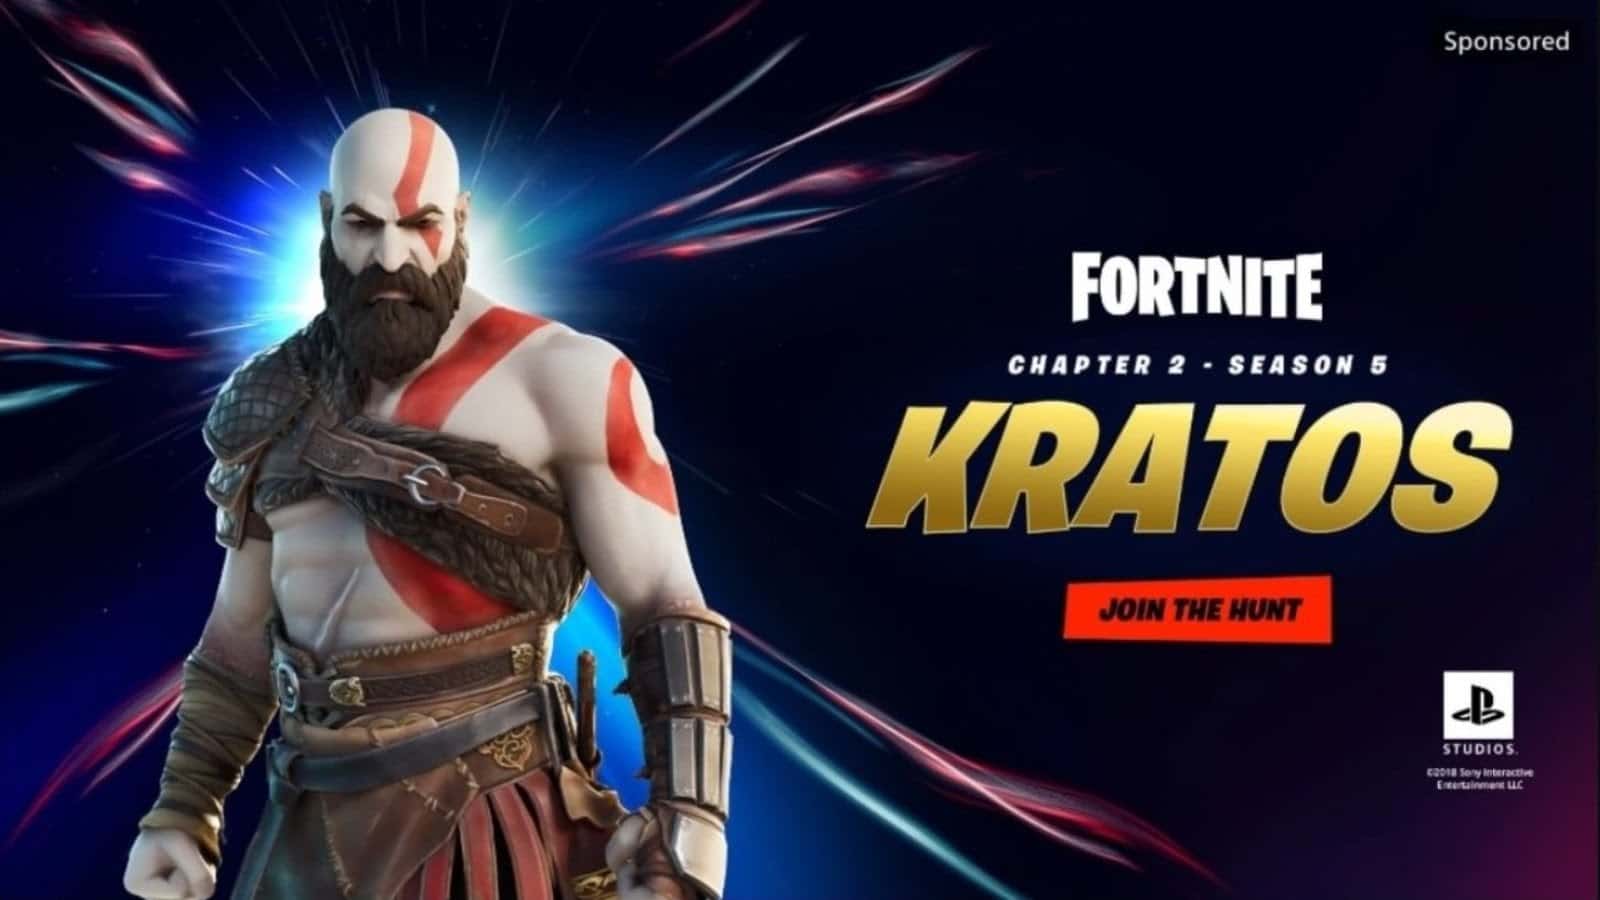 Kratos Fortnite Wallpapers